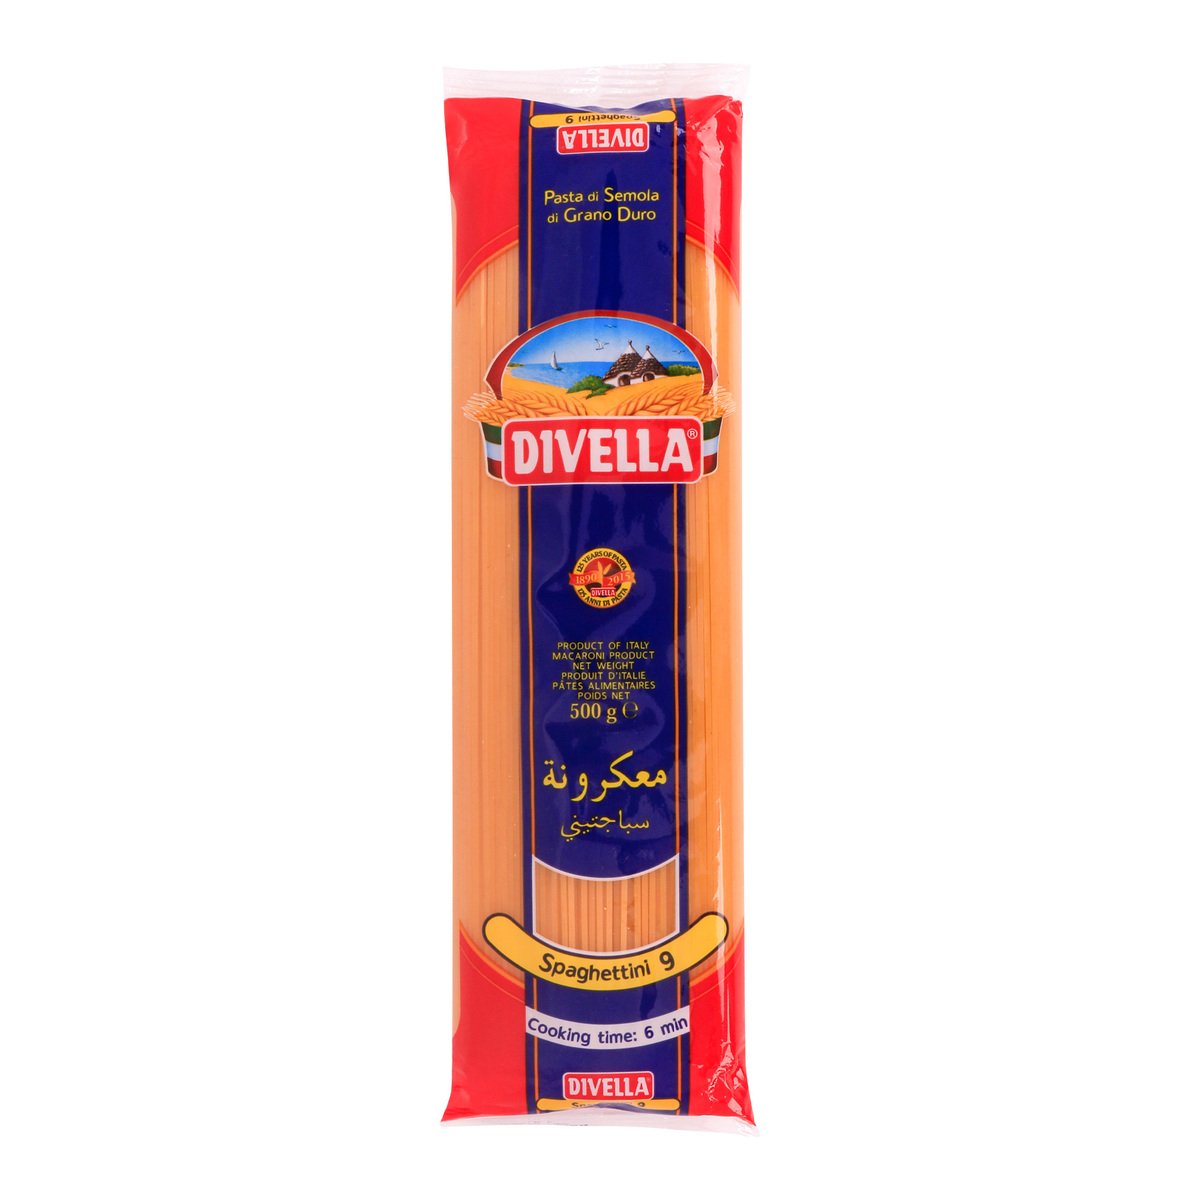 Divella Spaghetinni 9 500 g